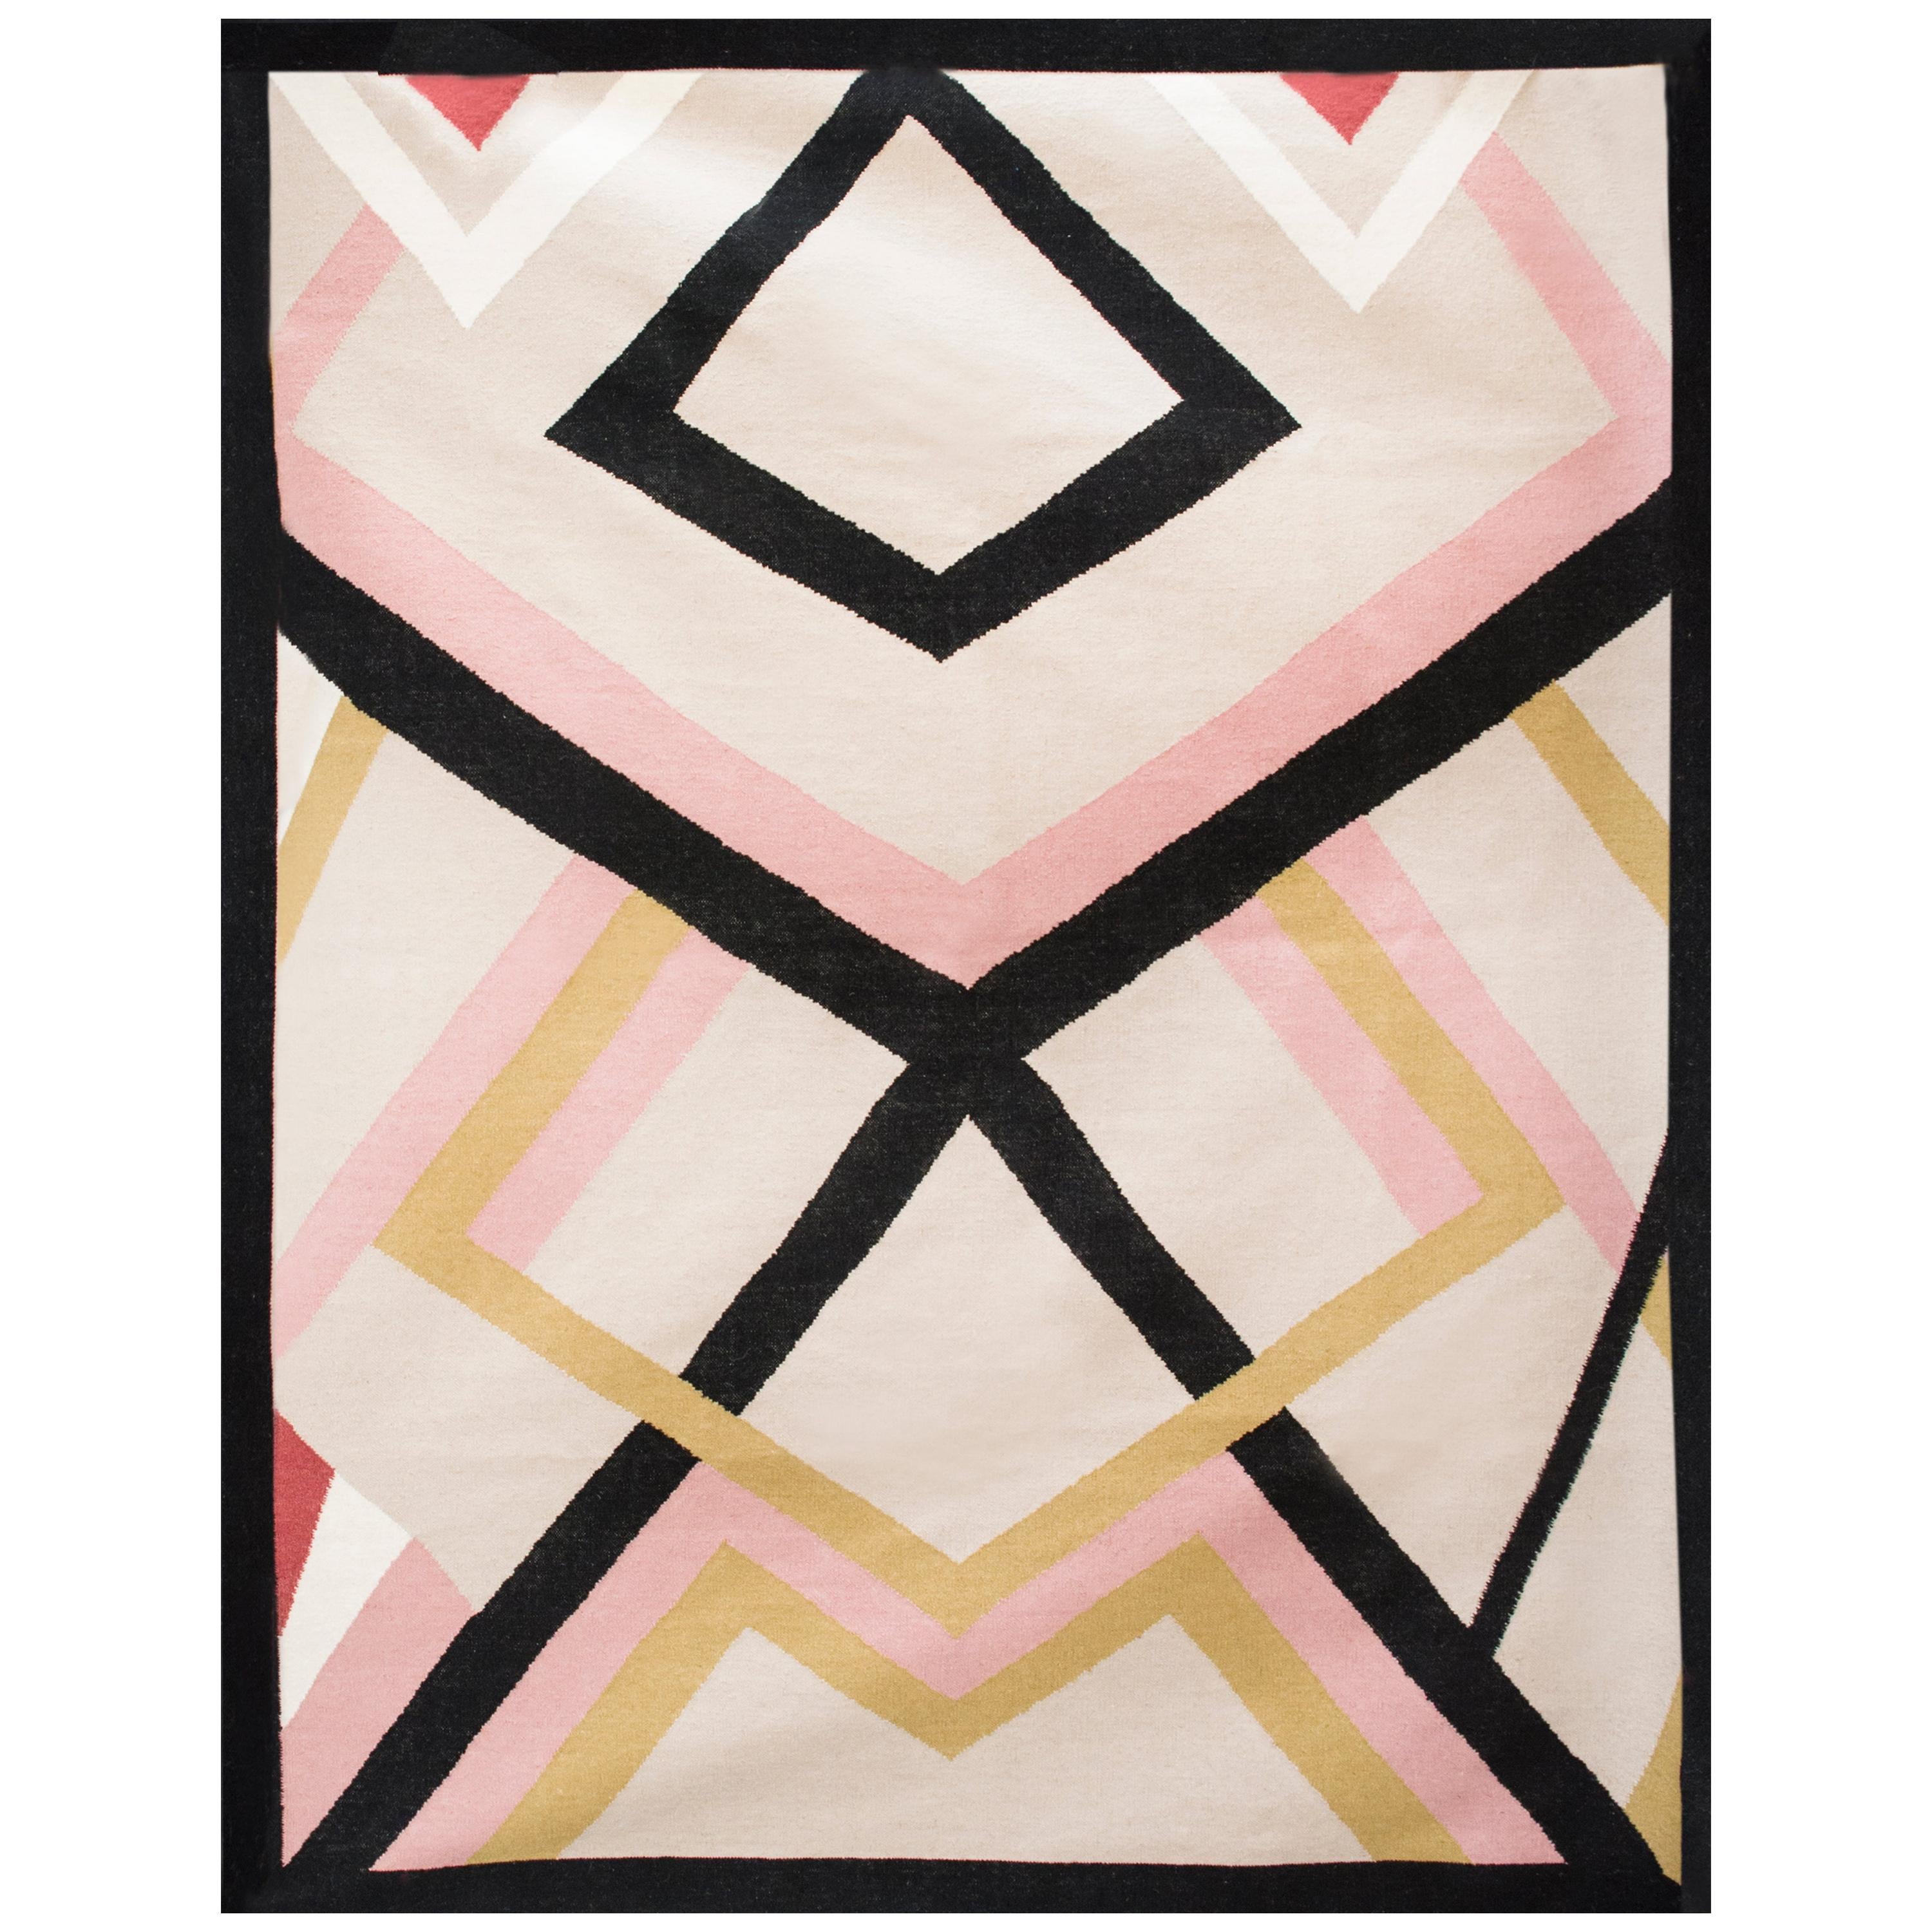 Tapis Kilim moderne en laine tissé à la main, à tissage plat, rose, noir, or et blanc, géométrique.